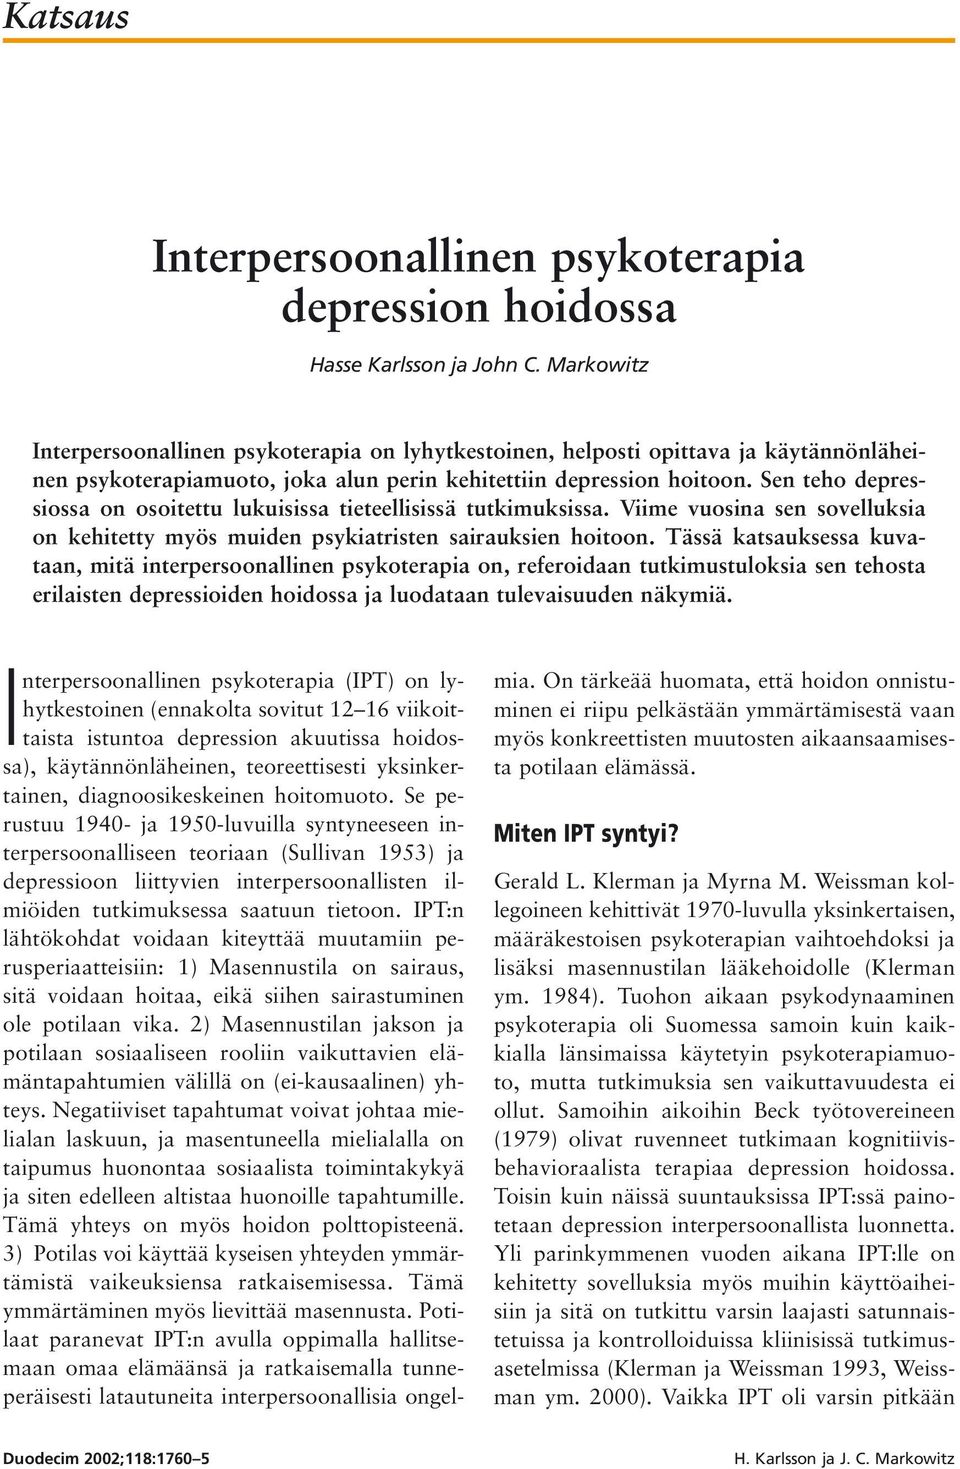 Sen teho depressiossa on osoitettu lukuisissa tieteellisissä tutkimuksissa. Viime vuosina sen sovelluksia on kehitetty myös muiden psykiatristen sairauksien hoitoon.